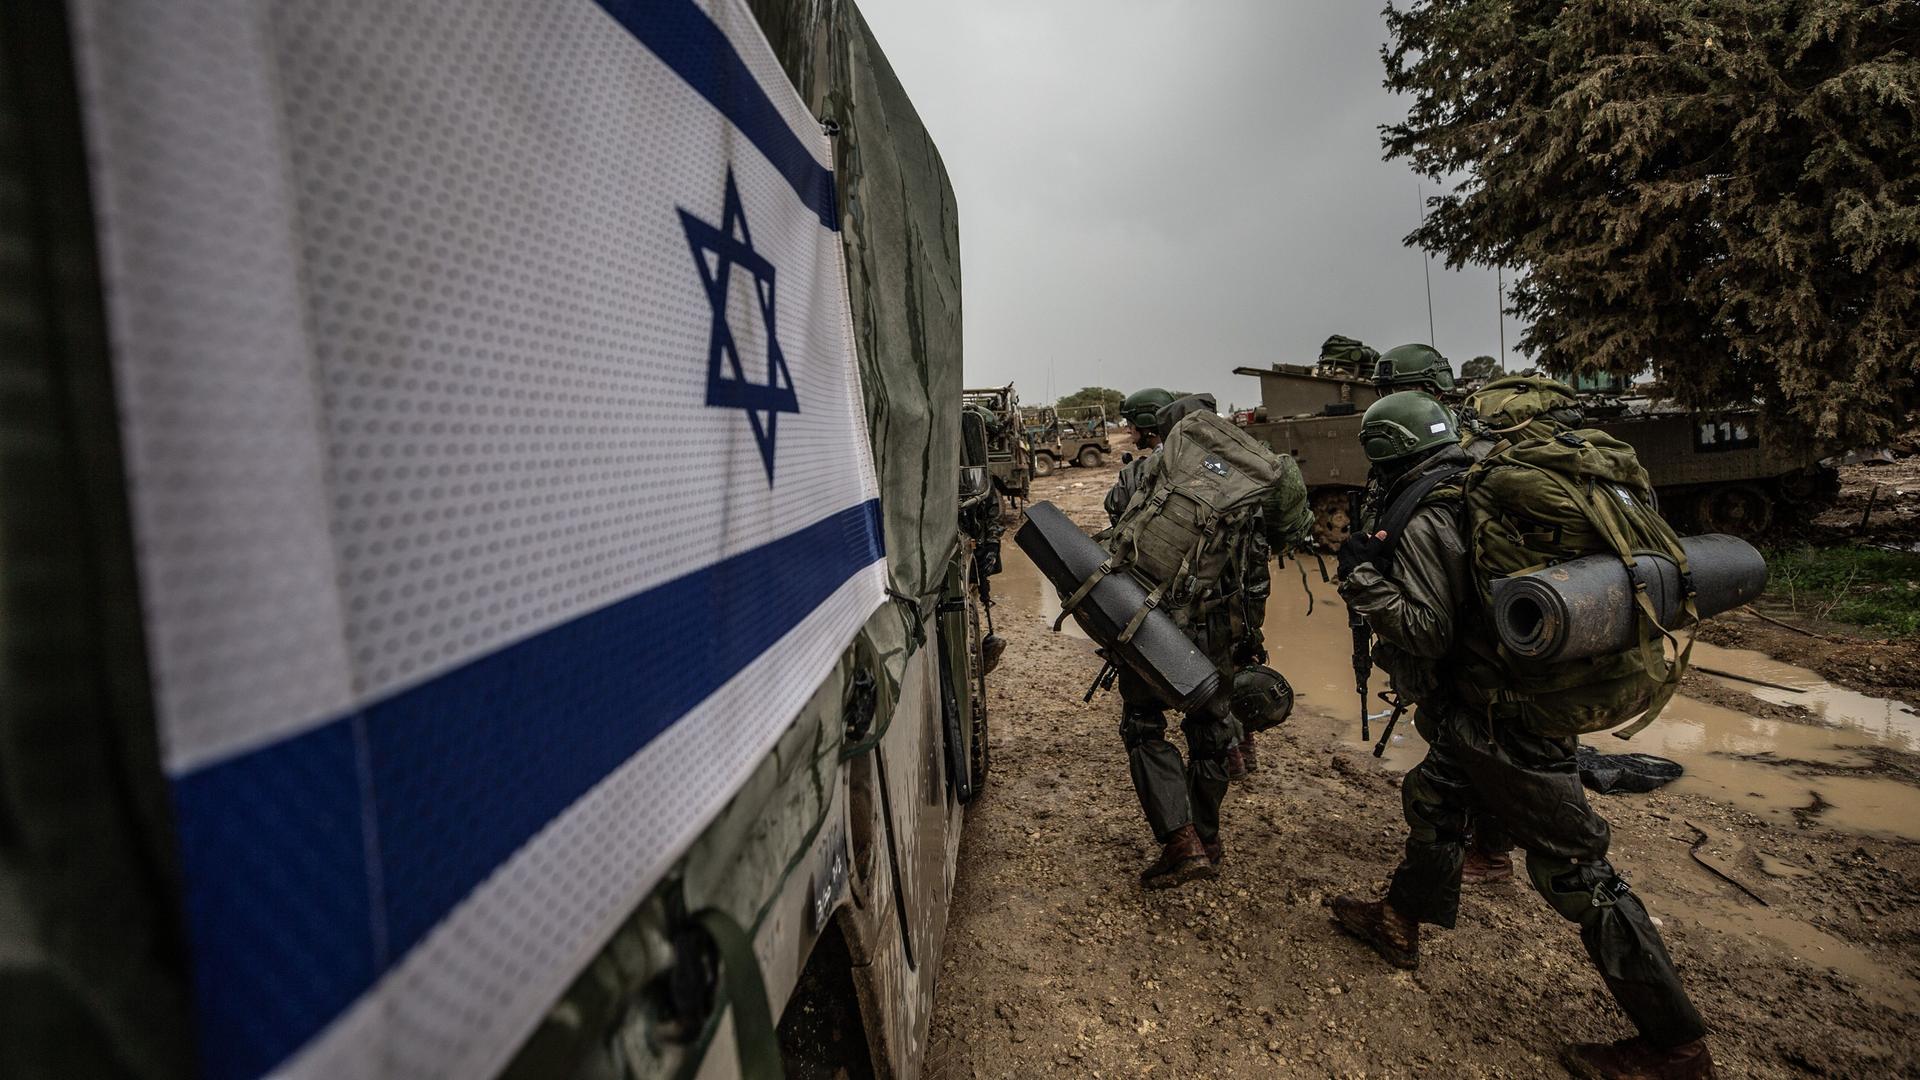 Israelische Soldaten in voller Ausrüstung gehen an einem Militärfahrzeug mit der israelischen Flagge vorüber.